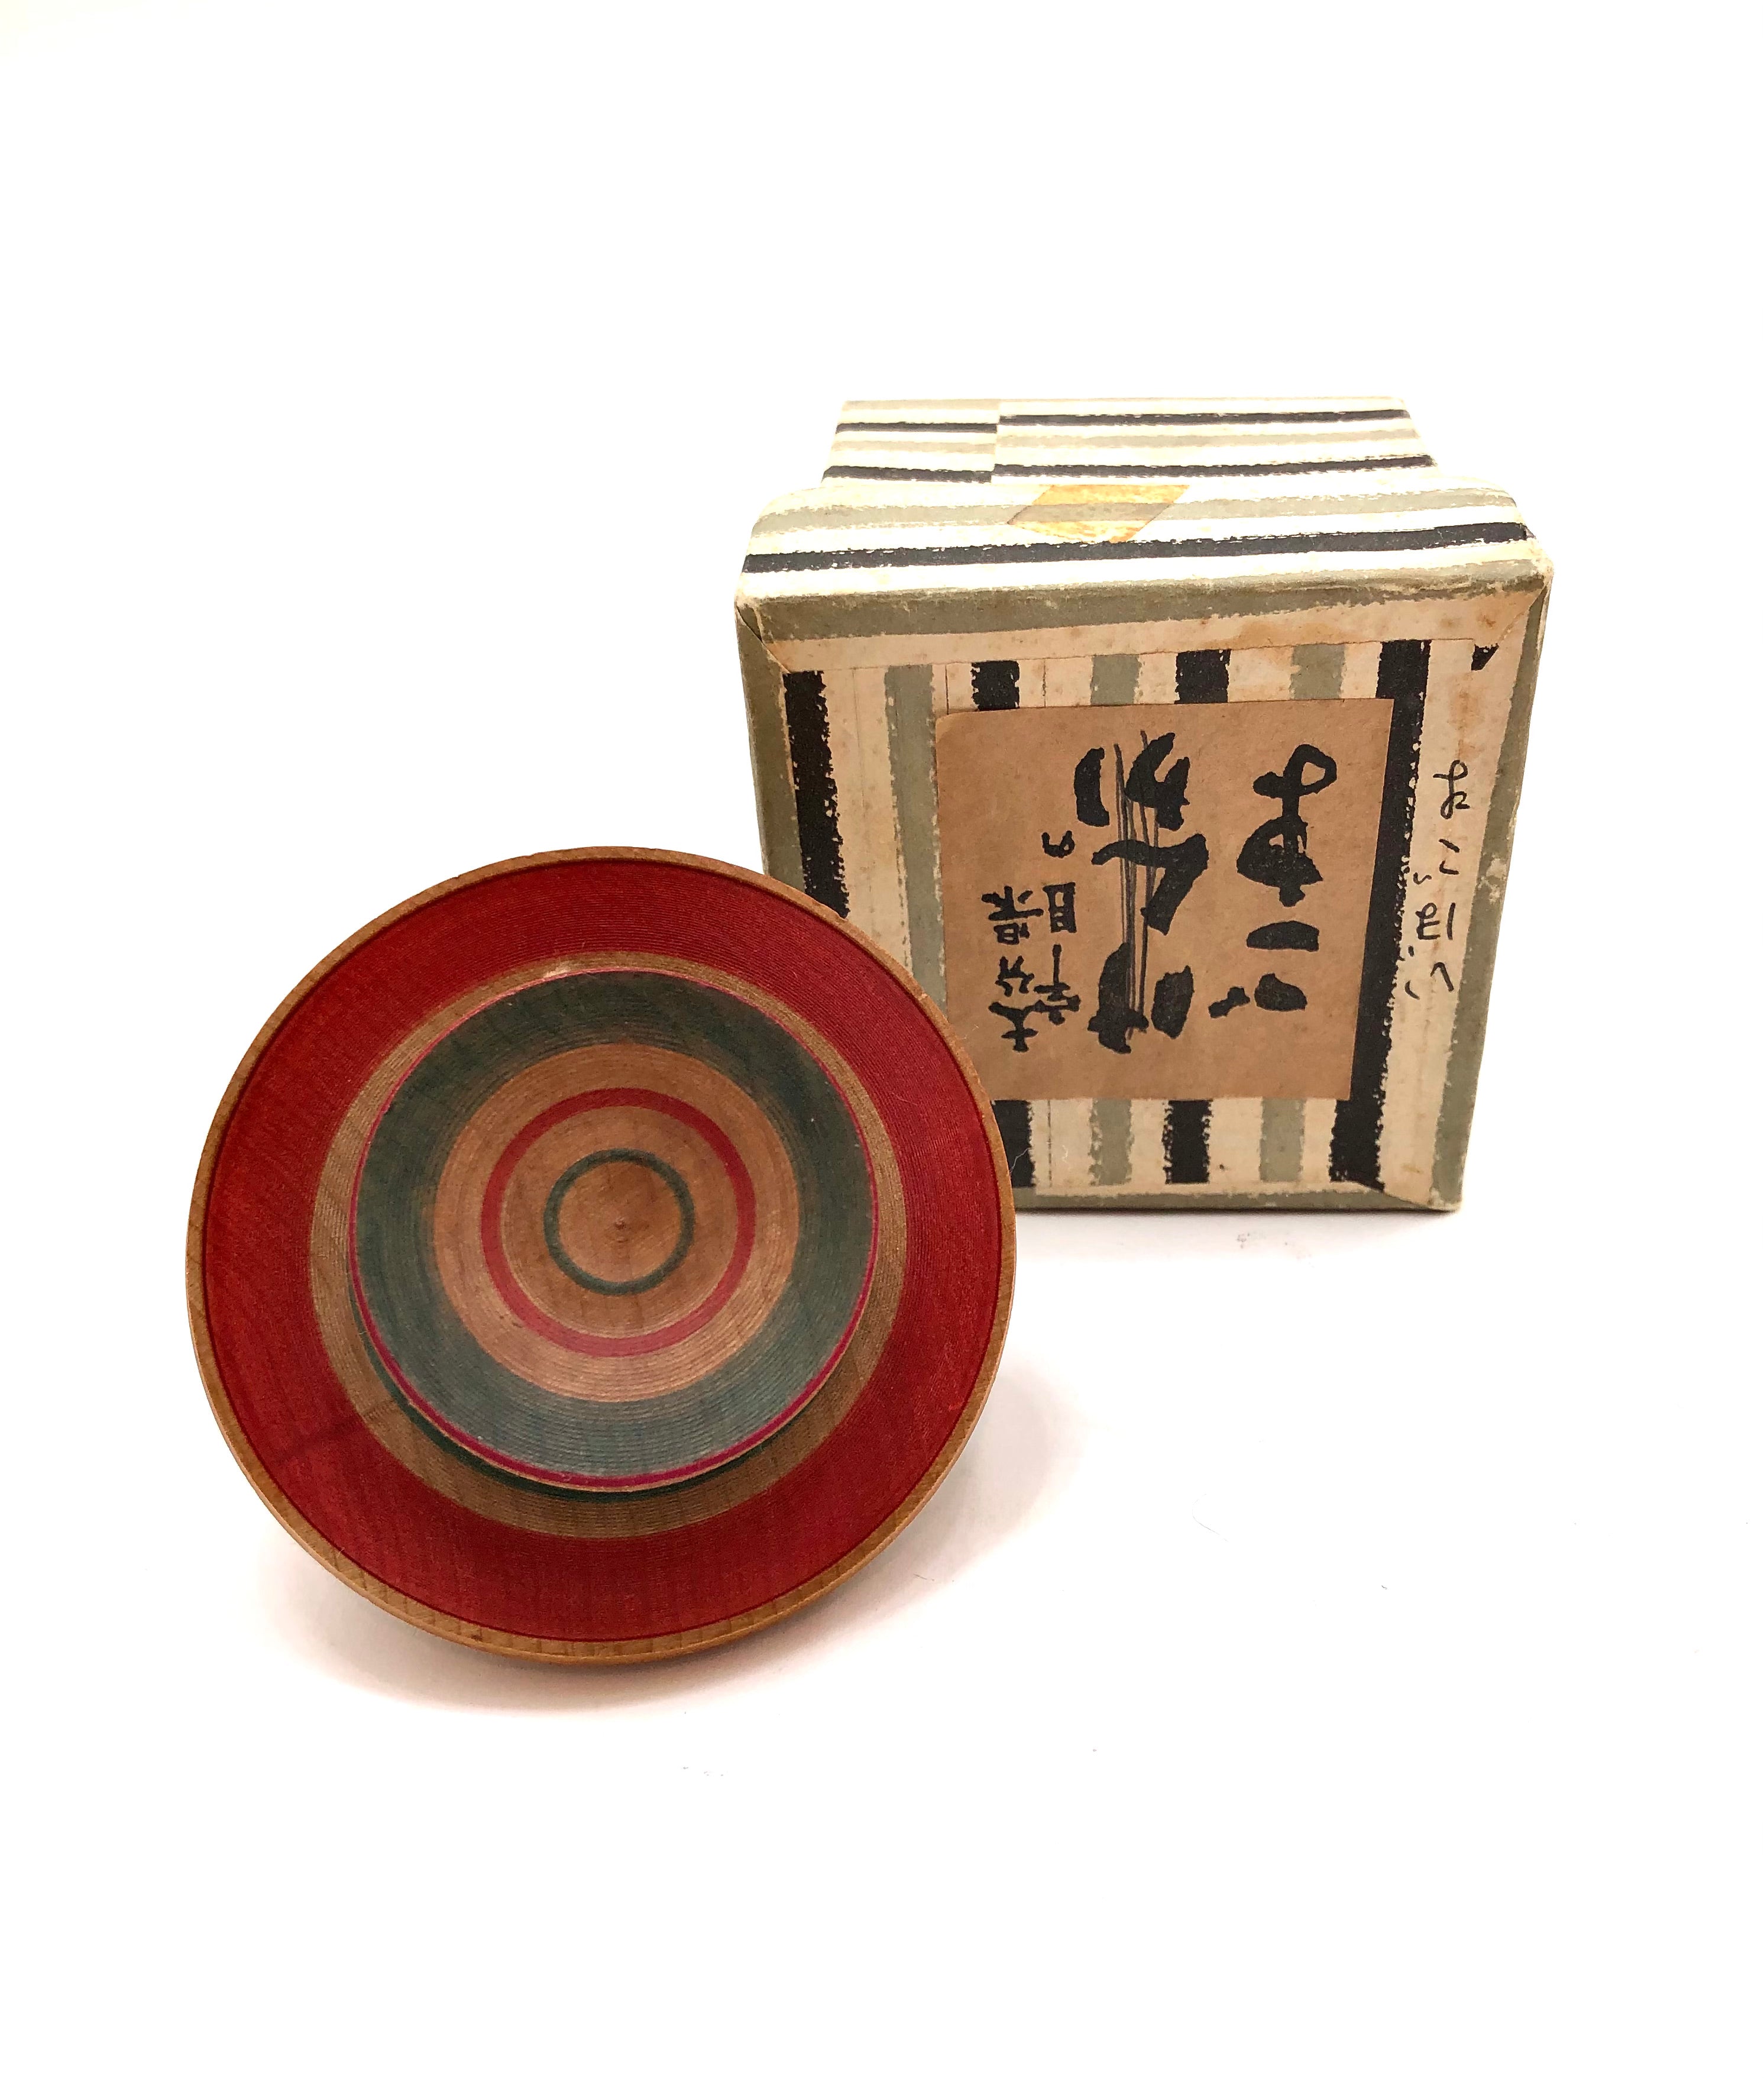 Japanese Folk Toy Wooden Fighting Top | Ibo Wart Koma by Taniguchi Kisaburo